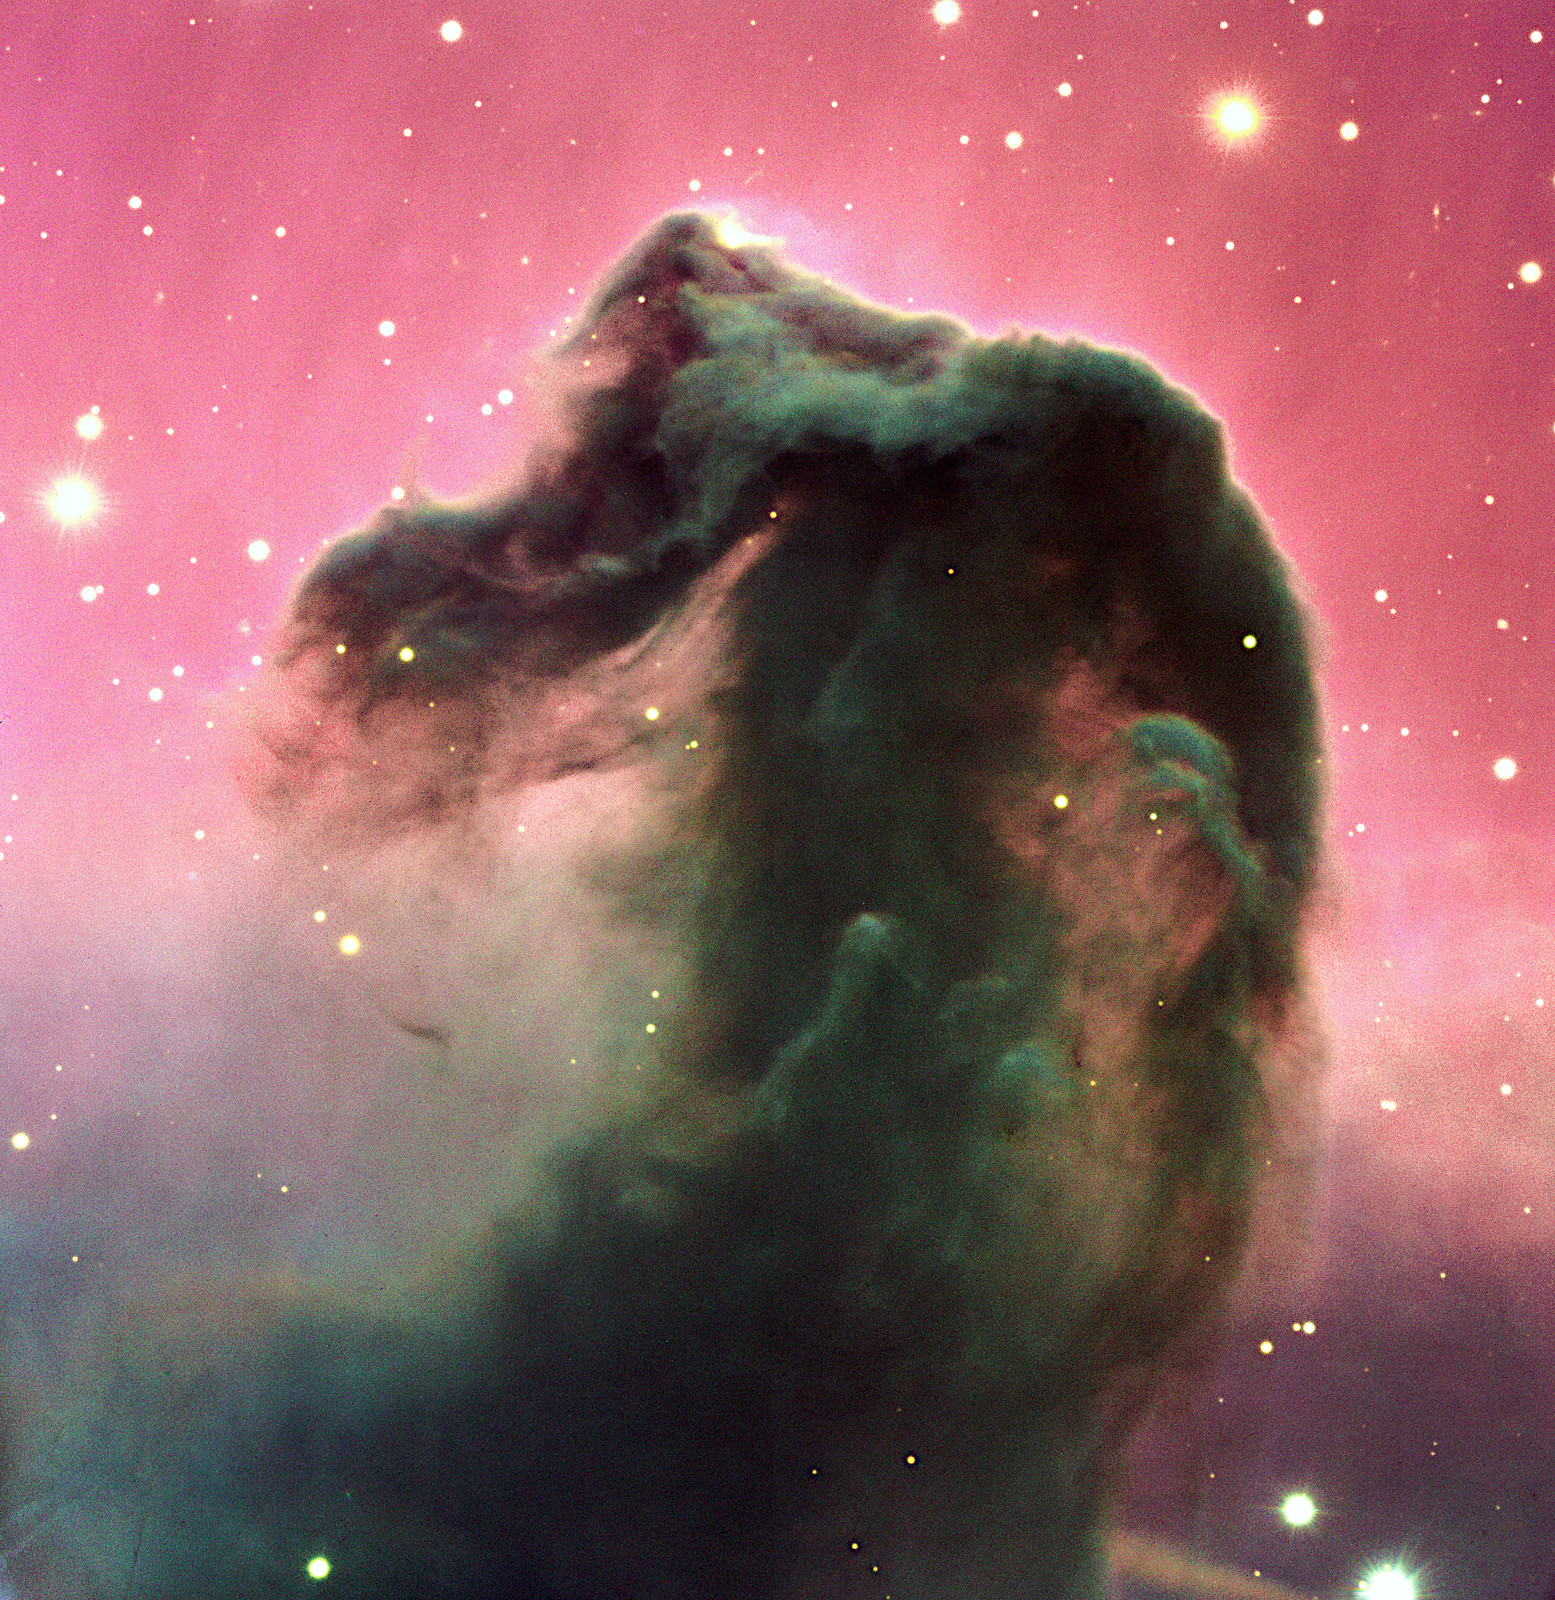 馬頭星雲 を口径8 2mの巨大望遠鏡で撮影した鮮明画像 アストロピクス